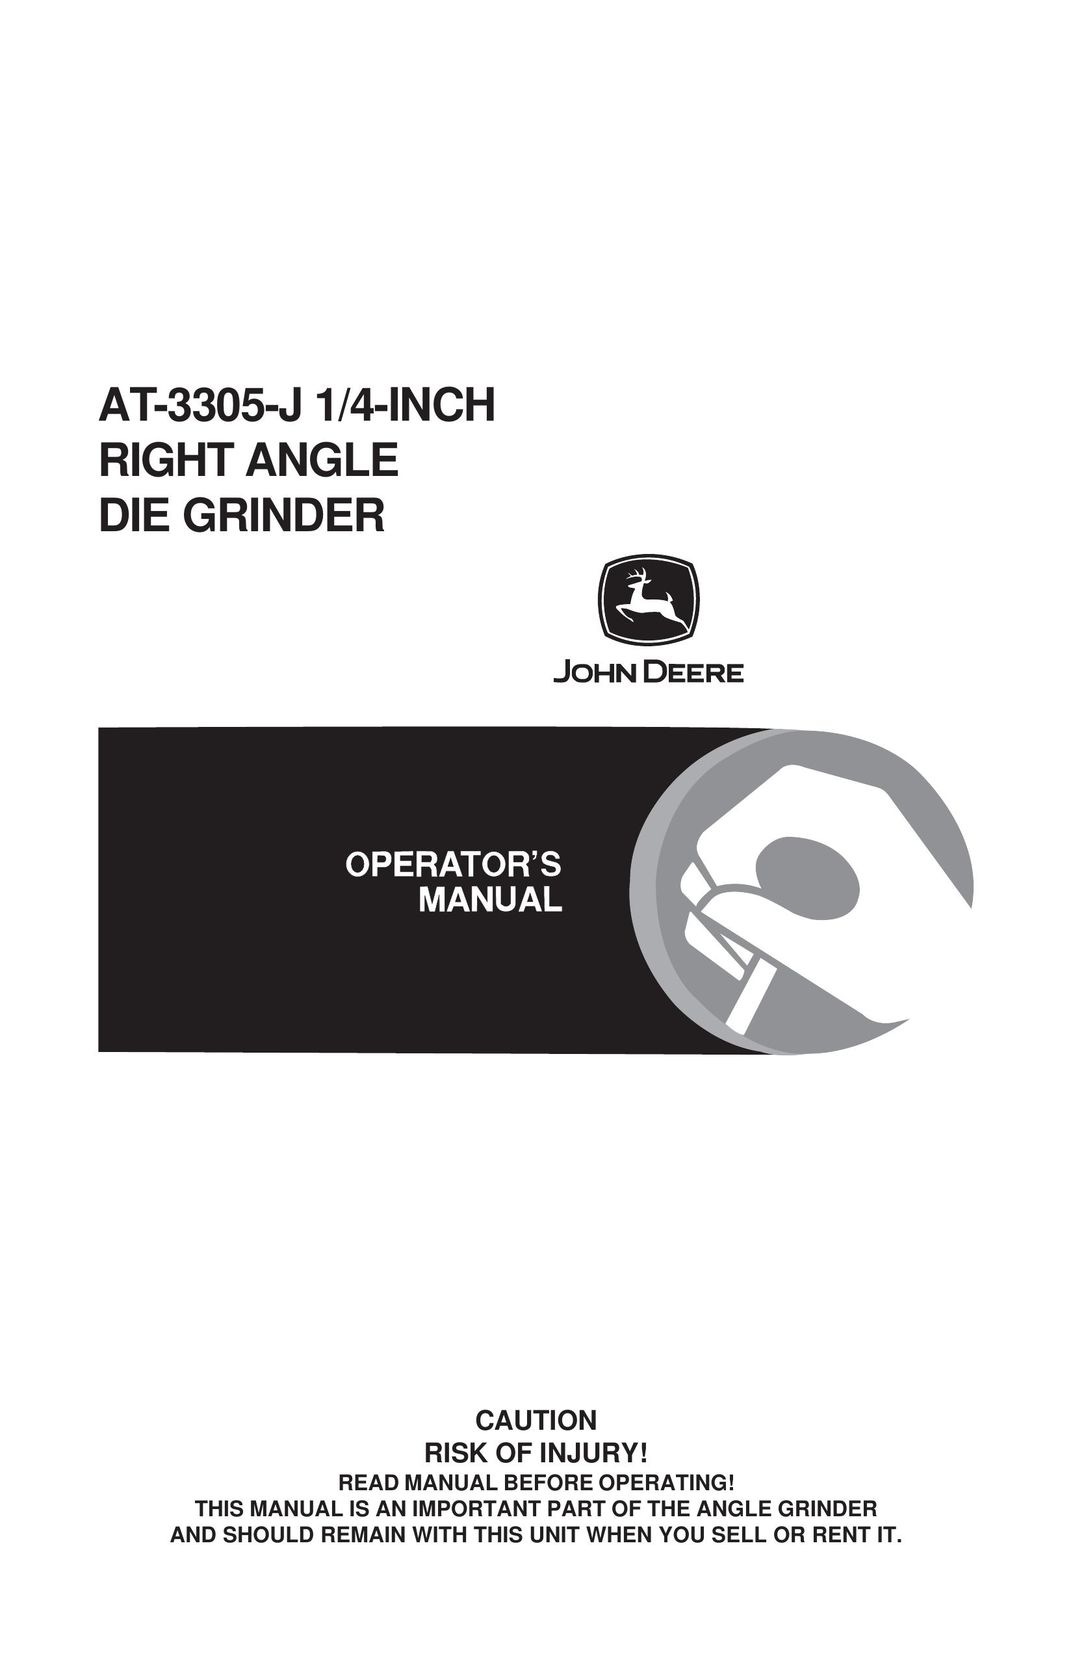 John Deere AT-3305-J Grinder User Manual